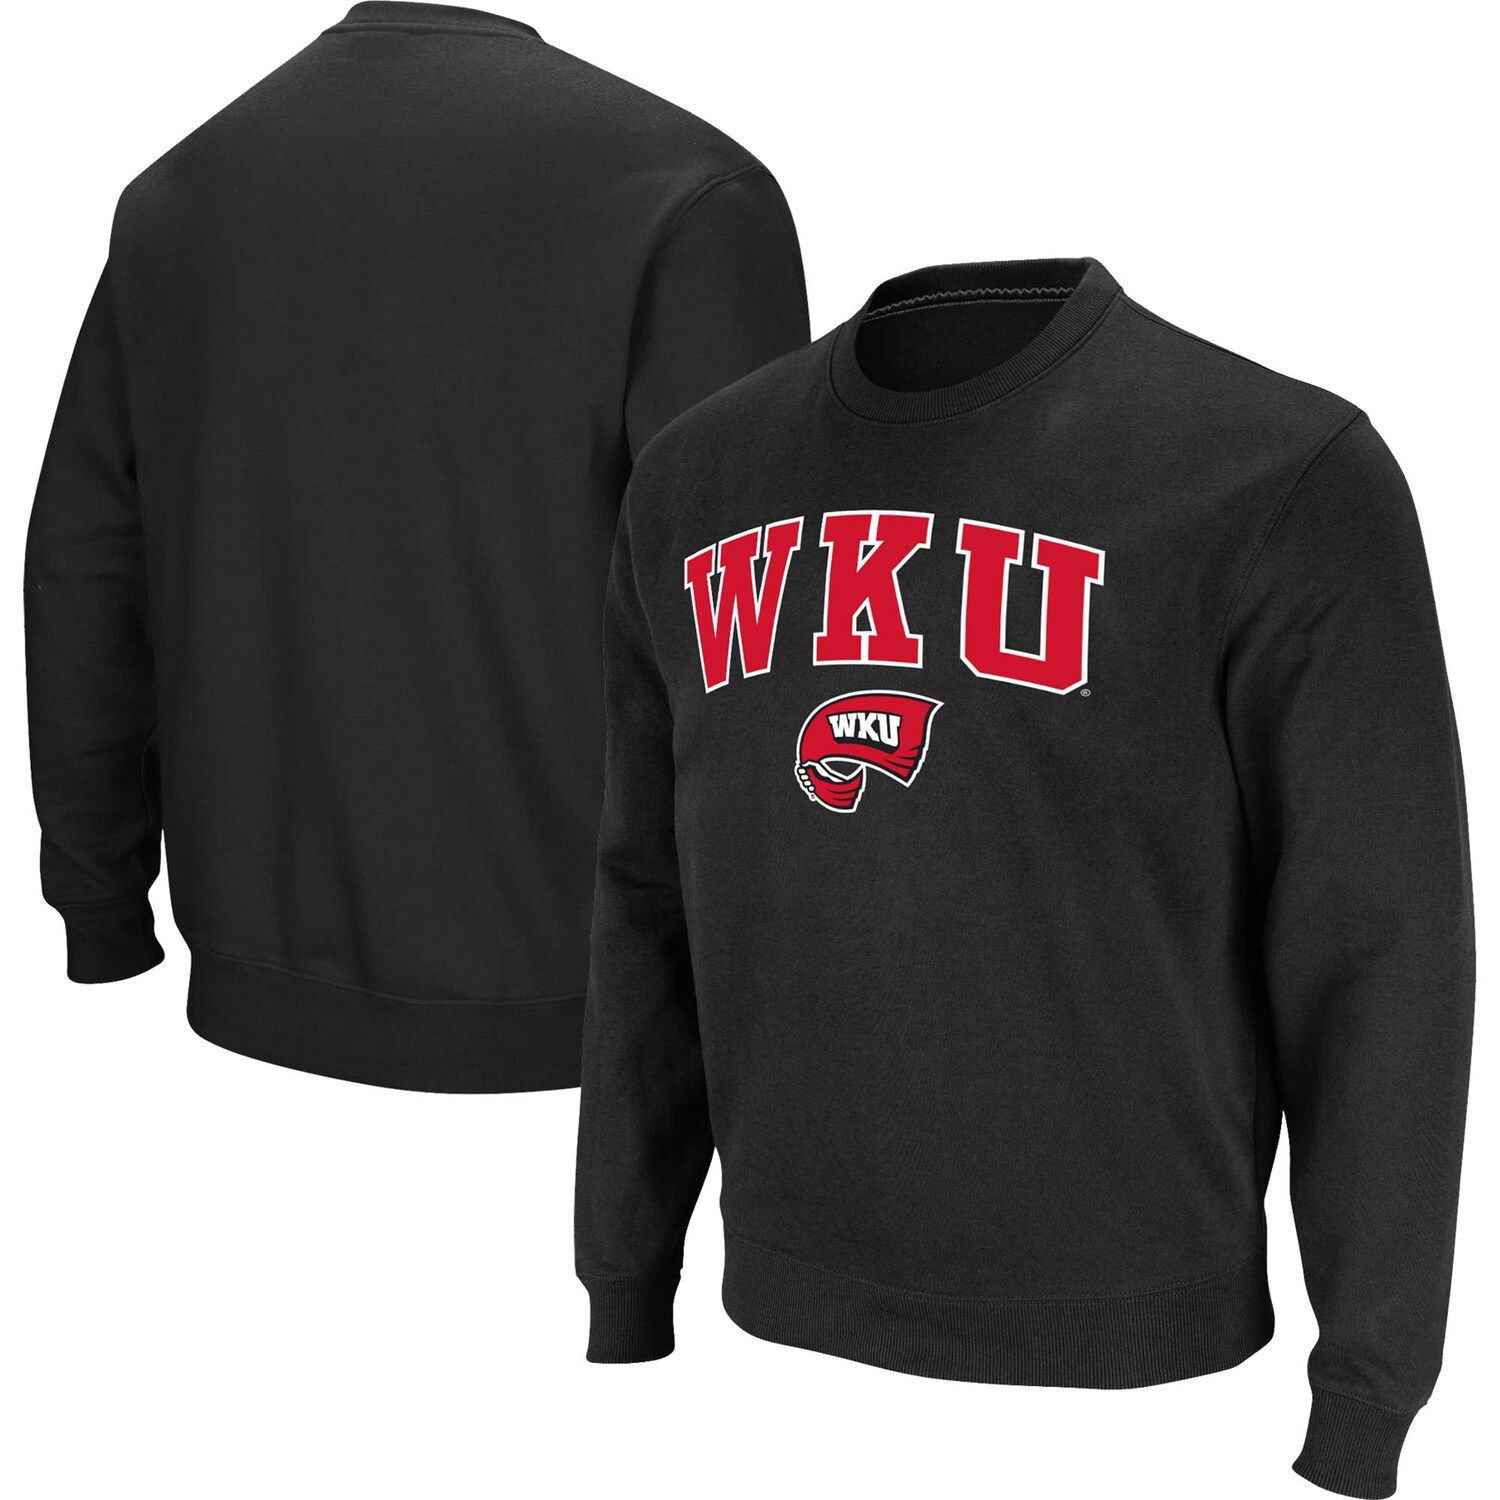 Мужской черный пуловер с логотипом Western Kentucky Hilltoppers с капюшоном и свитшотом Colosseum colosseum мужская красная футболка поло western kentucky hilltoppers